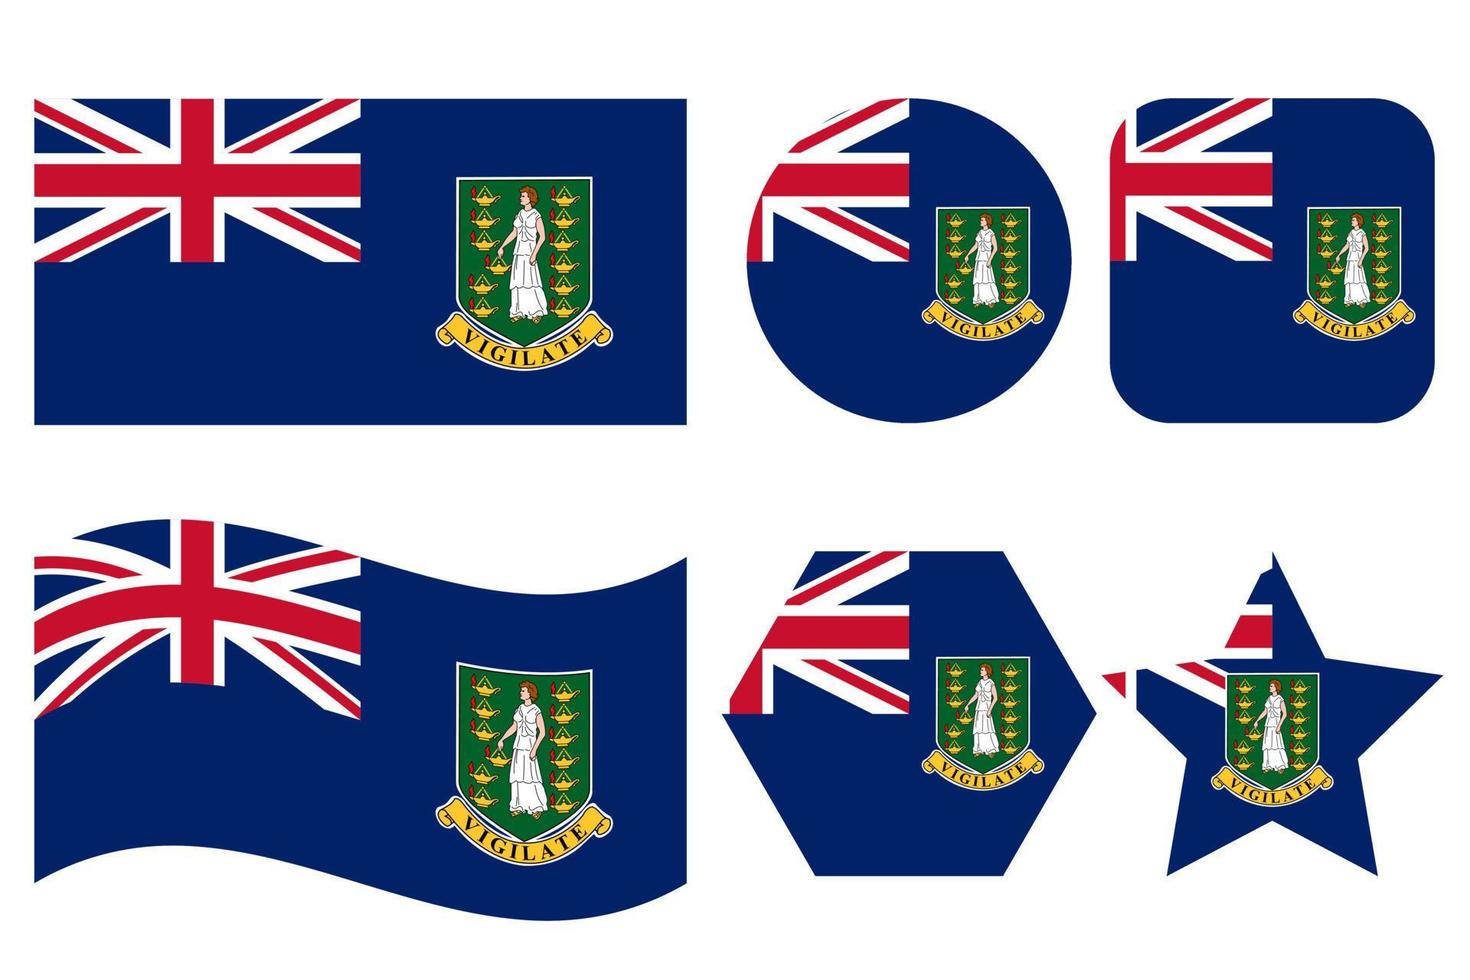 brittiskt jungfrulig öar flagga enkel illustration för oberoende dag eller val vektor